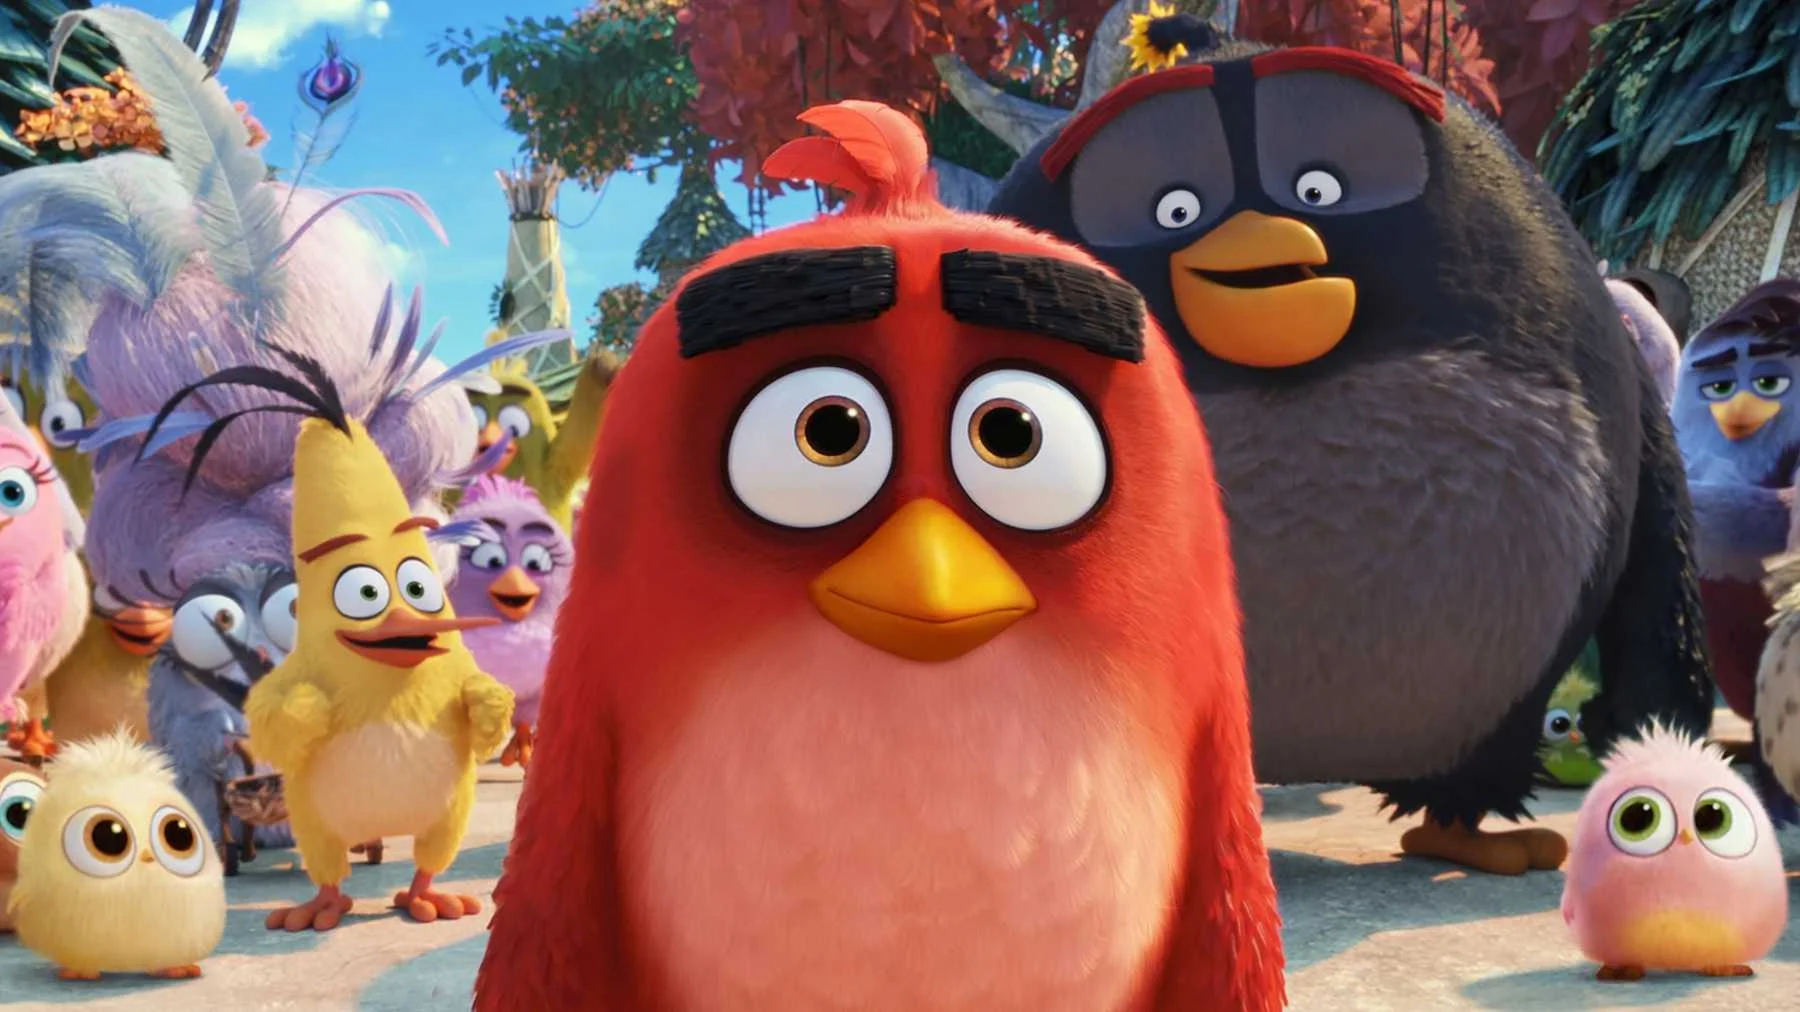 15 августа состоялась премьера мультфильма Angry Birds 2, который даже толком никто не ждал. Я уже успел сходить на него в кинотеатр, и очень приятно удивился. Это крайне приятная детская экранизация мобильной игры без особых нареканий и с массой добротного юмора. 